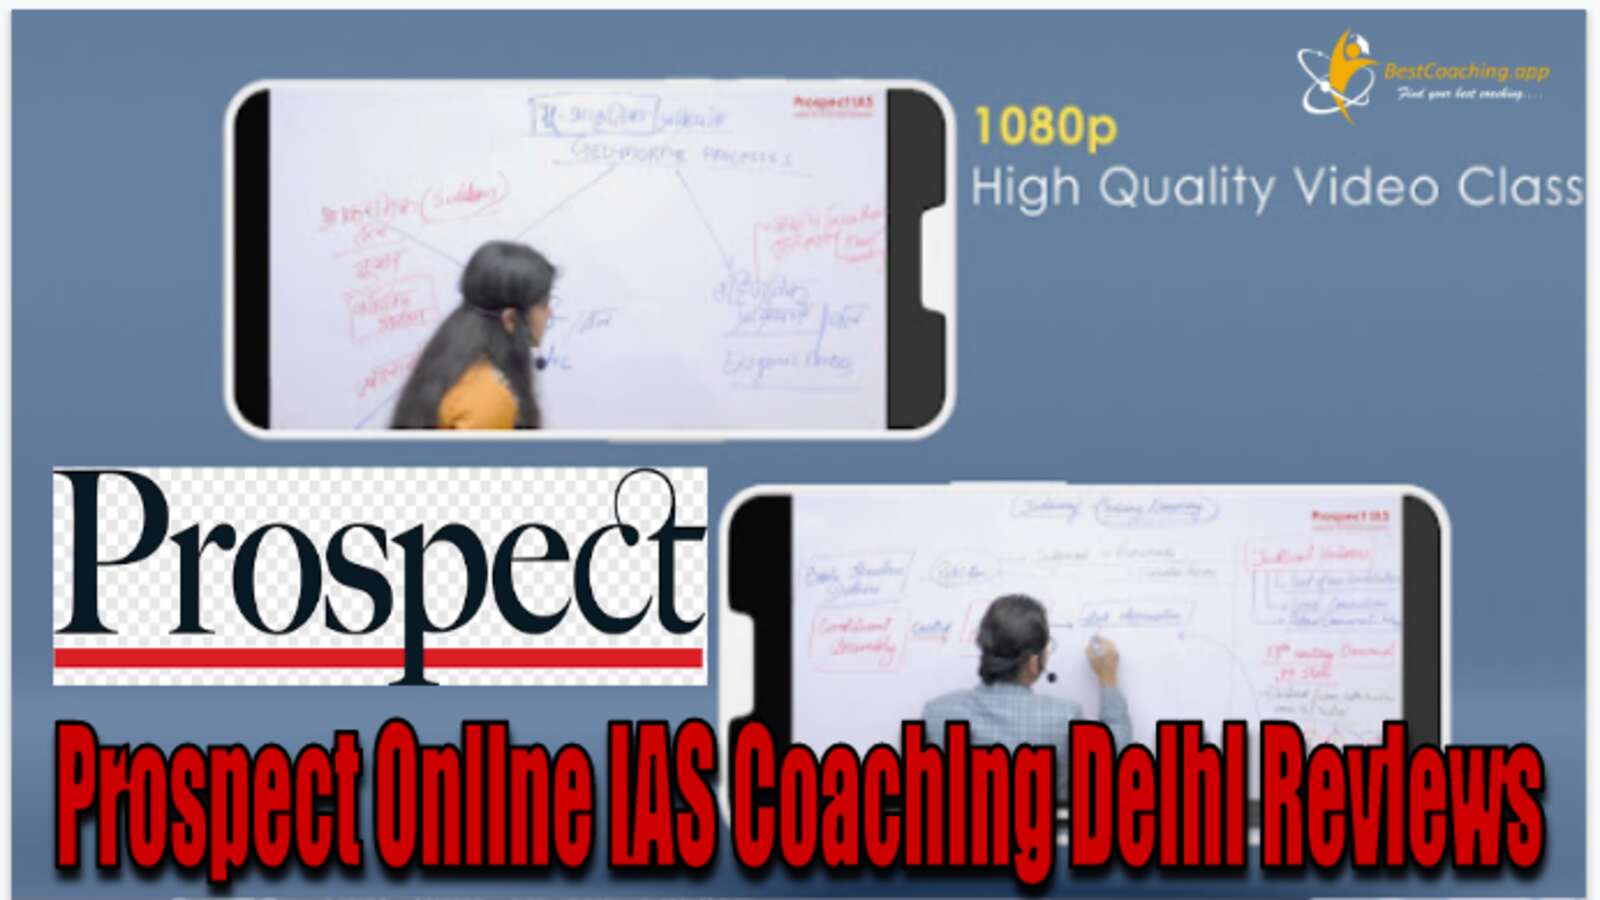 Prospect Online IAS Coaching Delhi Reviews